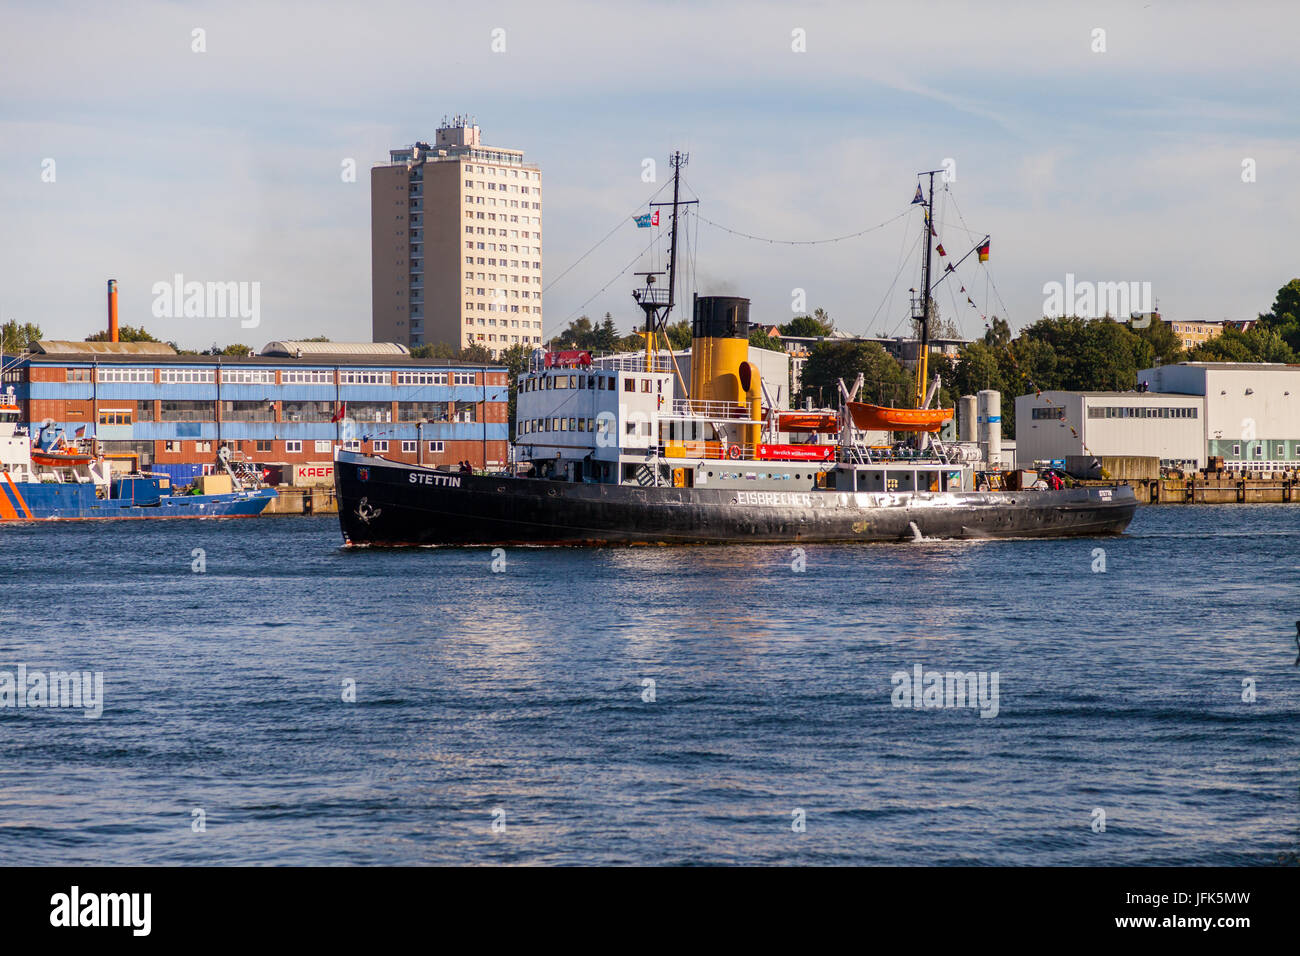 Kiel/Deutschland - vom 20. Juni 2017: Deutsche Dampf Eisbrecher Stettin fährt durch das Wasser bei der öffentlichen Veranstaltung Kieler Woche. Stockfoto